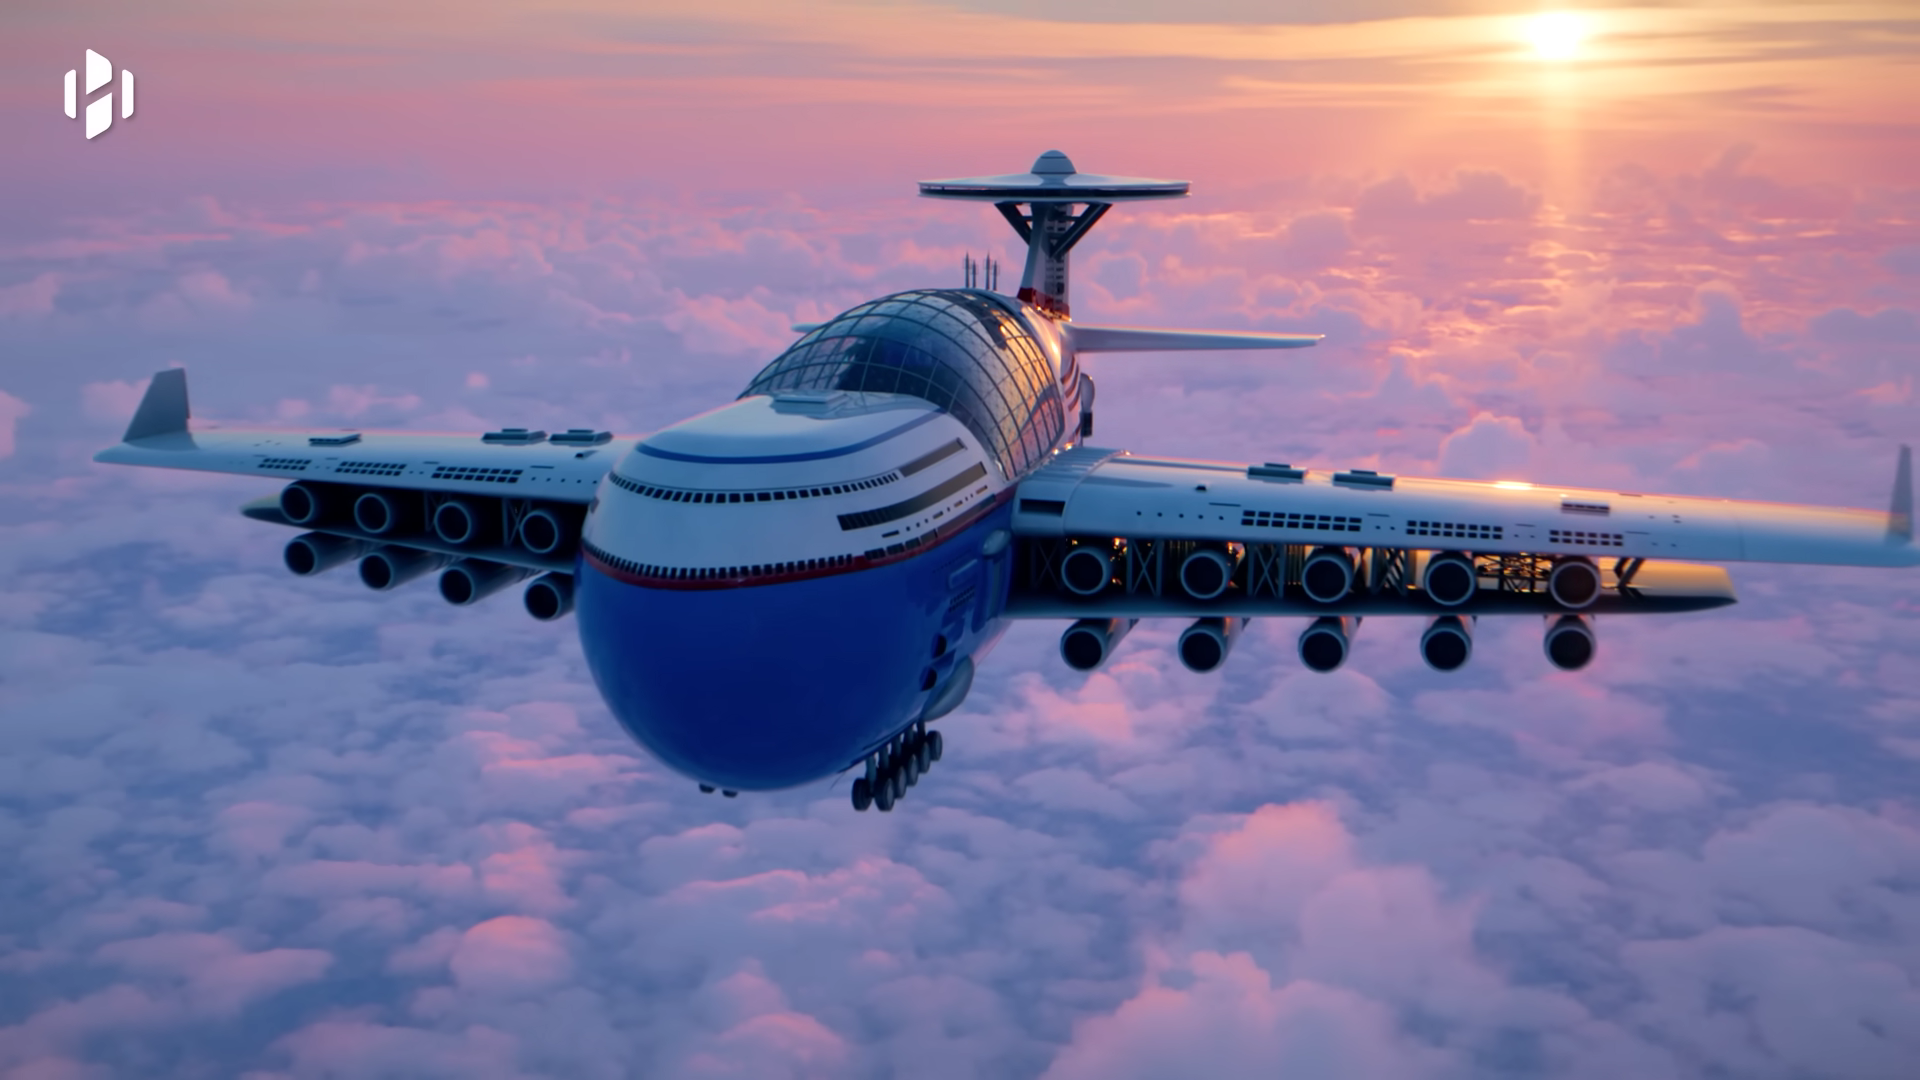 Sky Cruise è un hotel aereo nucleare da 5.000 passeggeri che può volare per anni